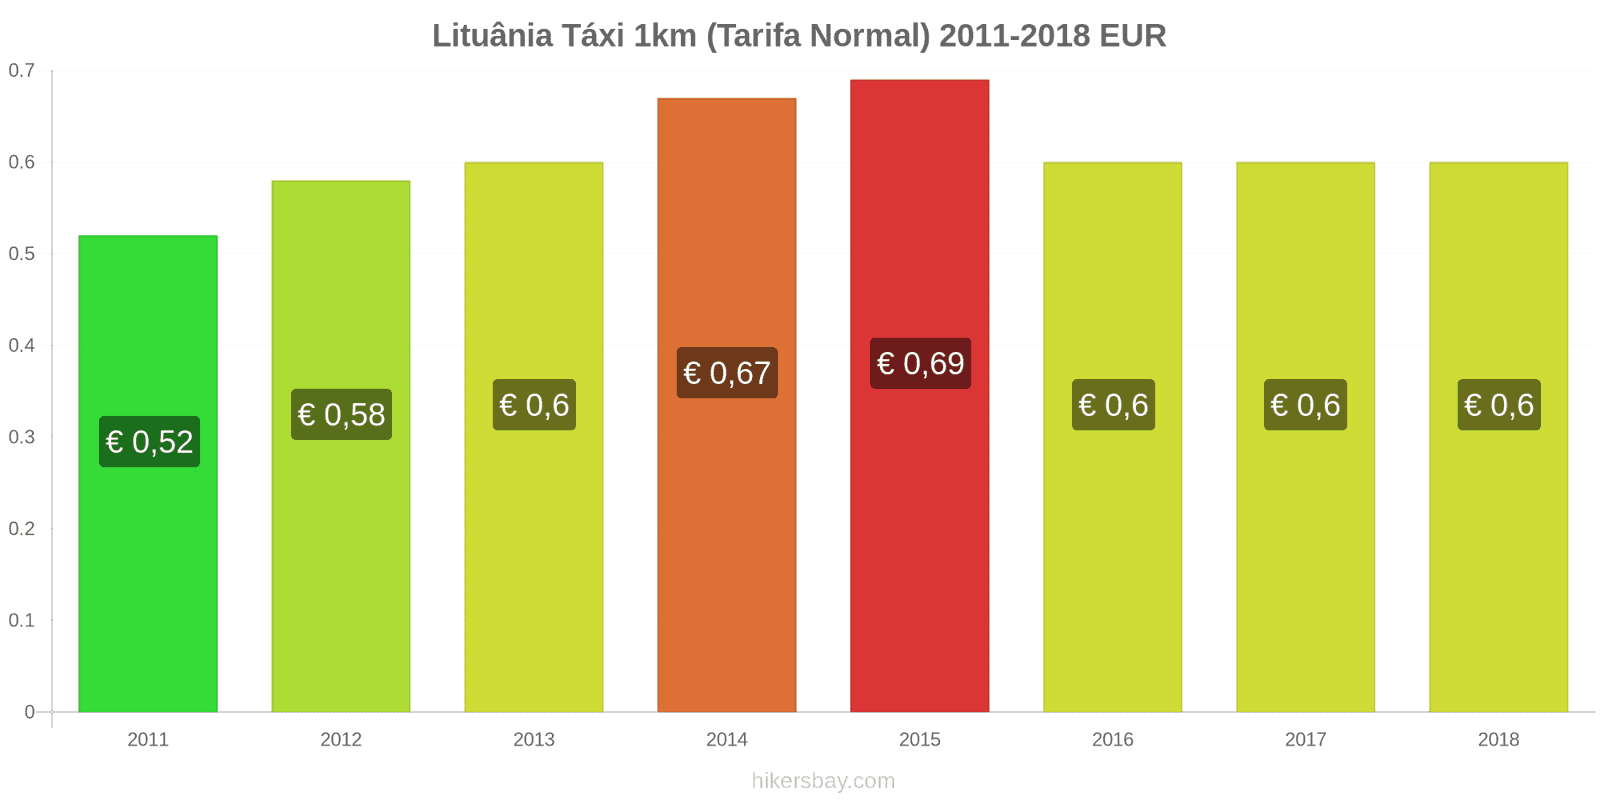 Lituânia mudanças de preços Táxi 1km (Tarifa Normal) hikersbay.com